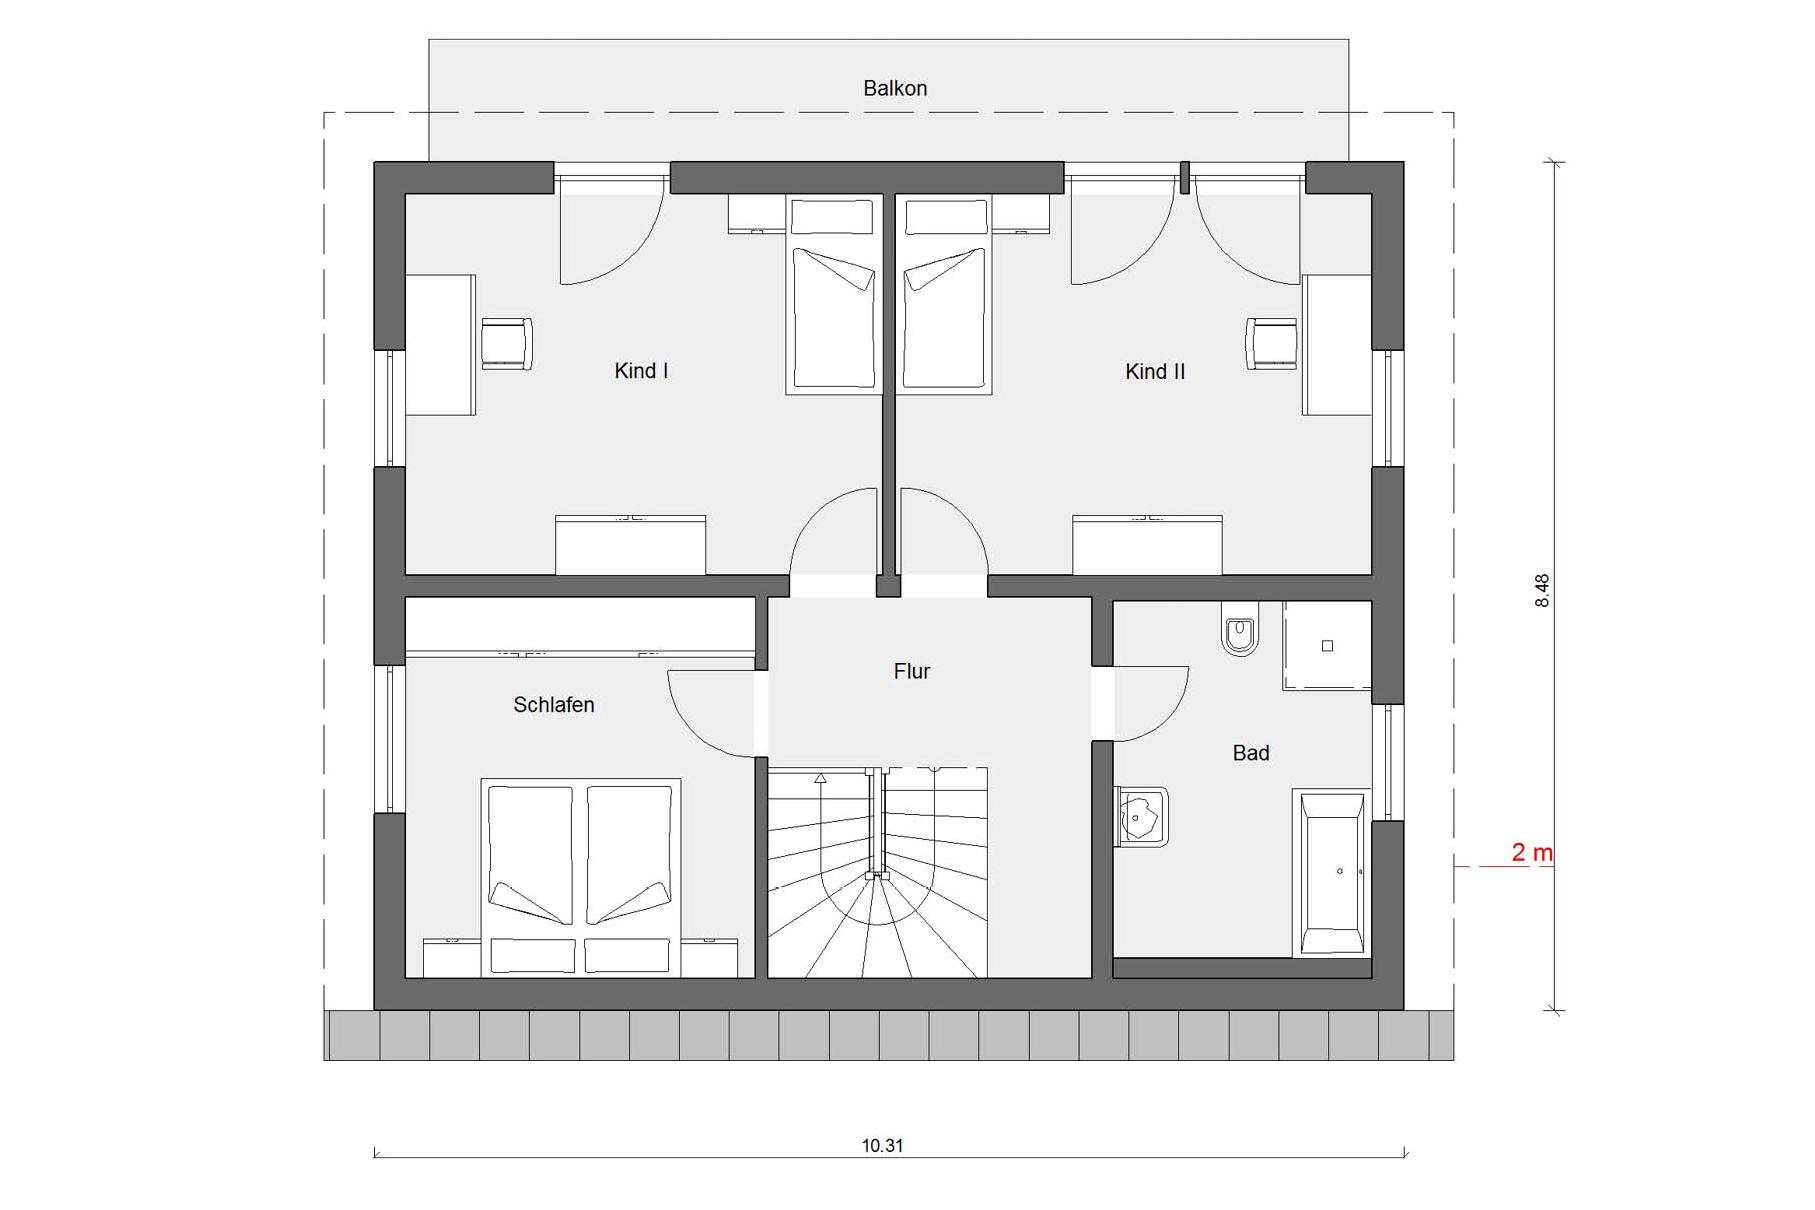 Pianta soffitta E 15-143.18  Casa con tetto ad una falda